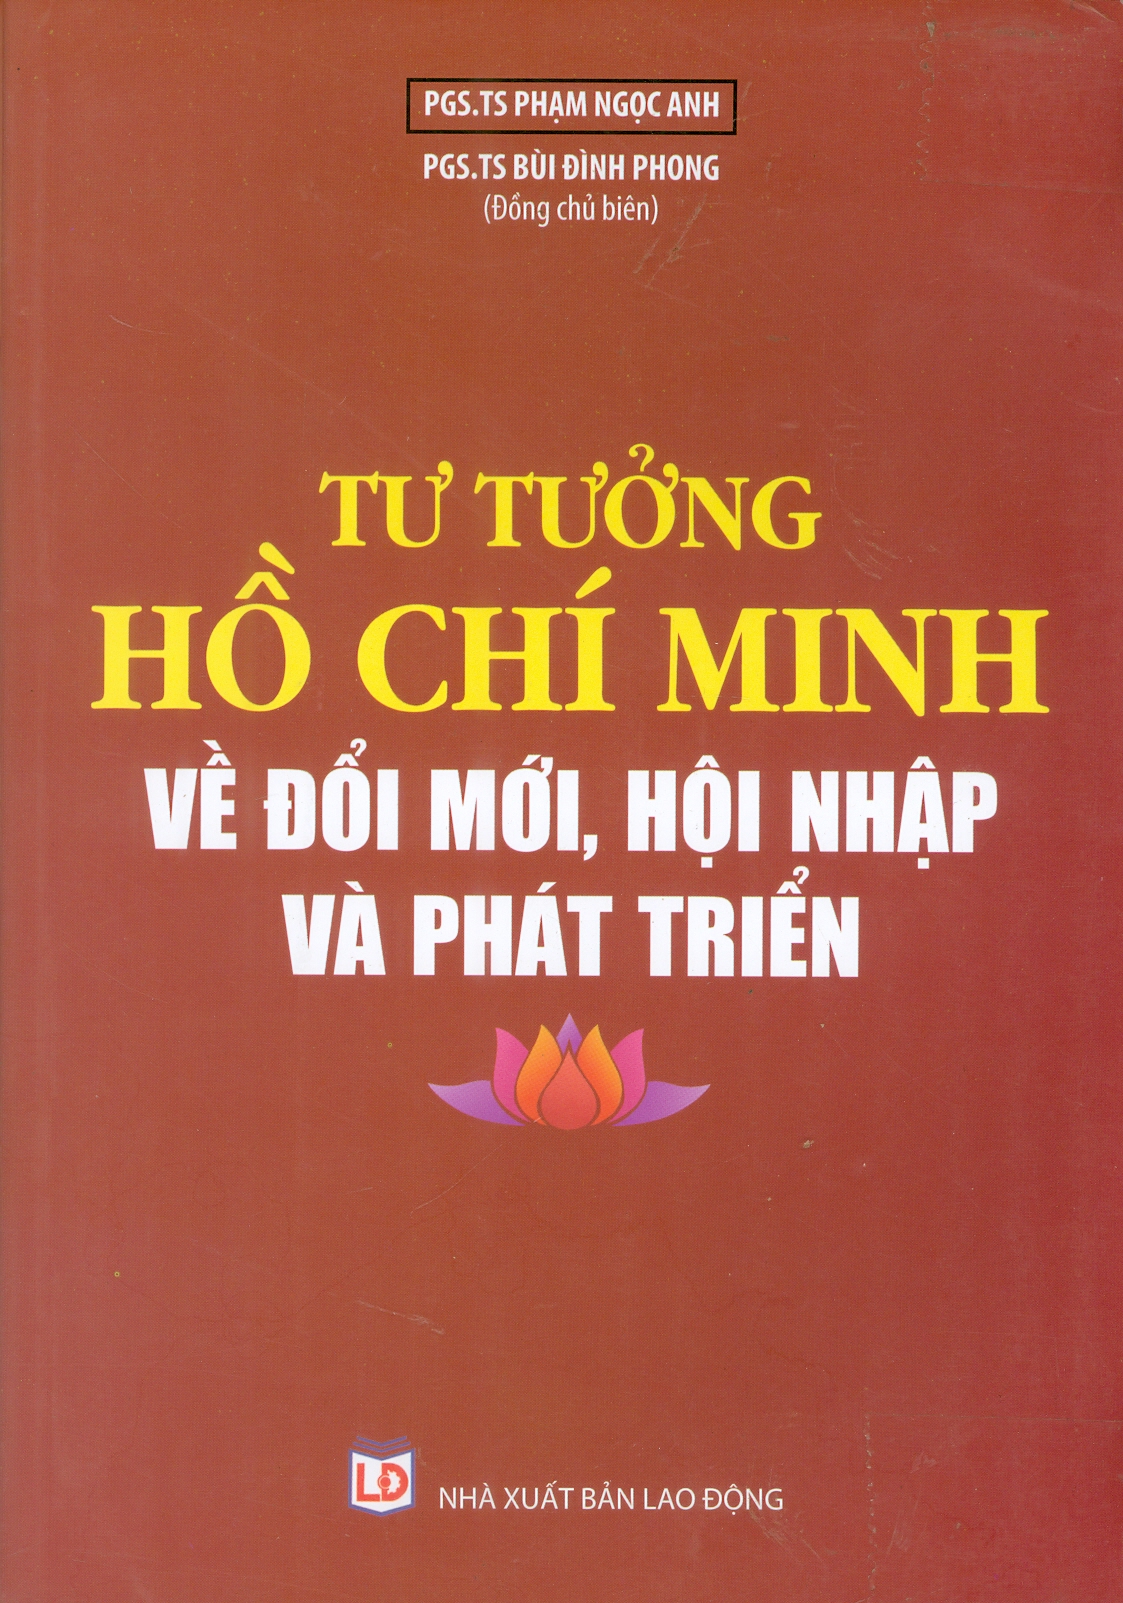 Tư tưởng Hồ Chí Minh về đổi mới, hội nhập và phát triển